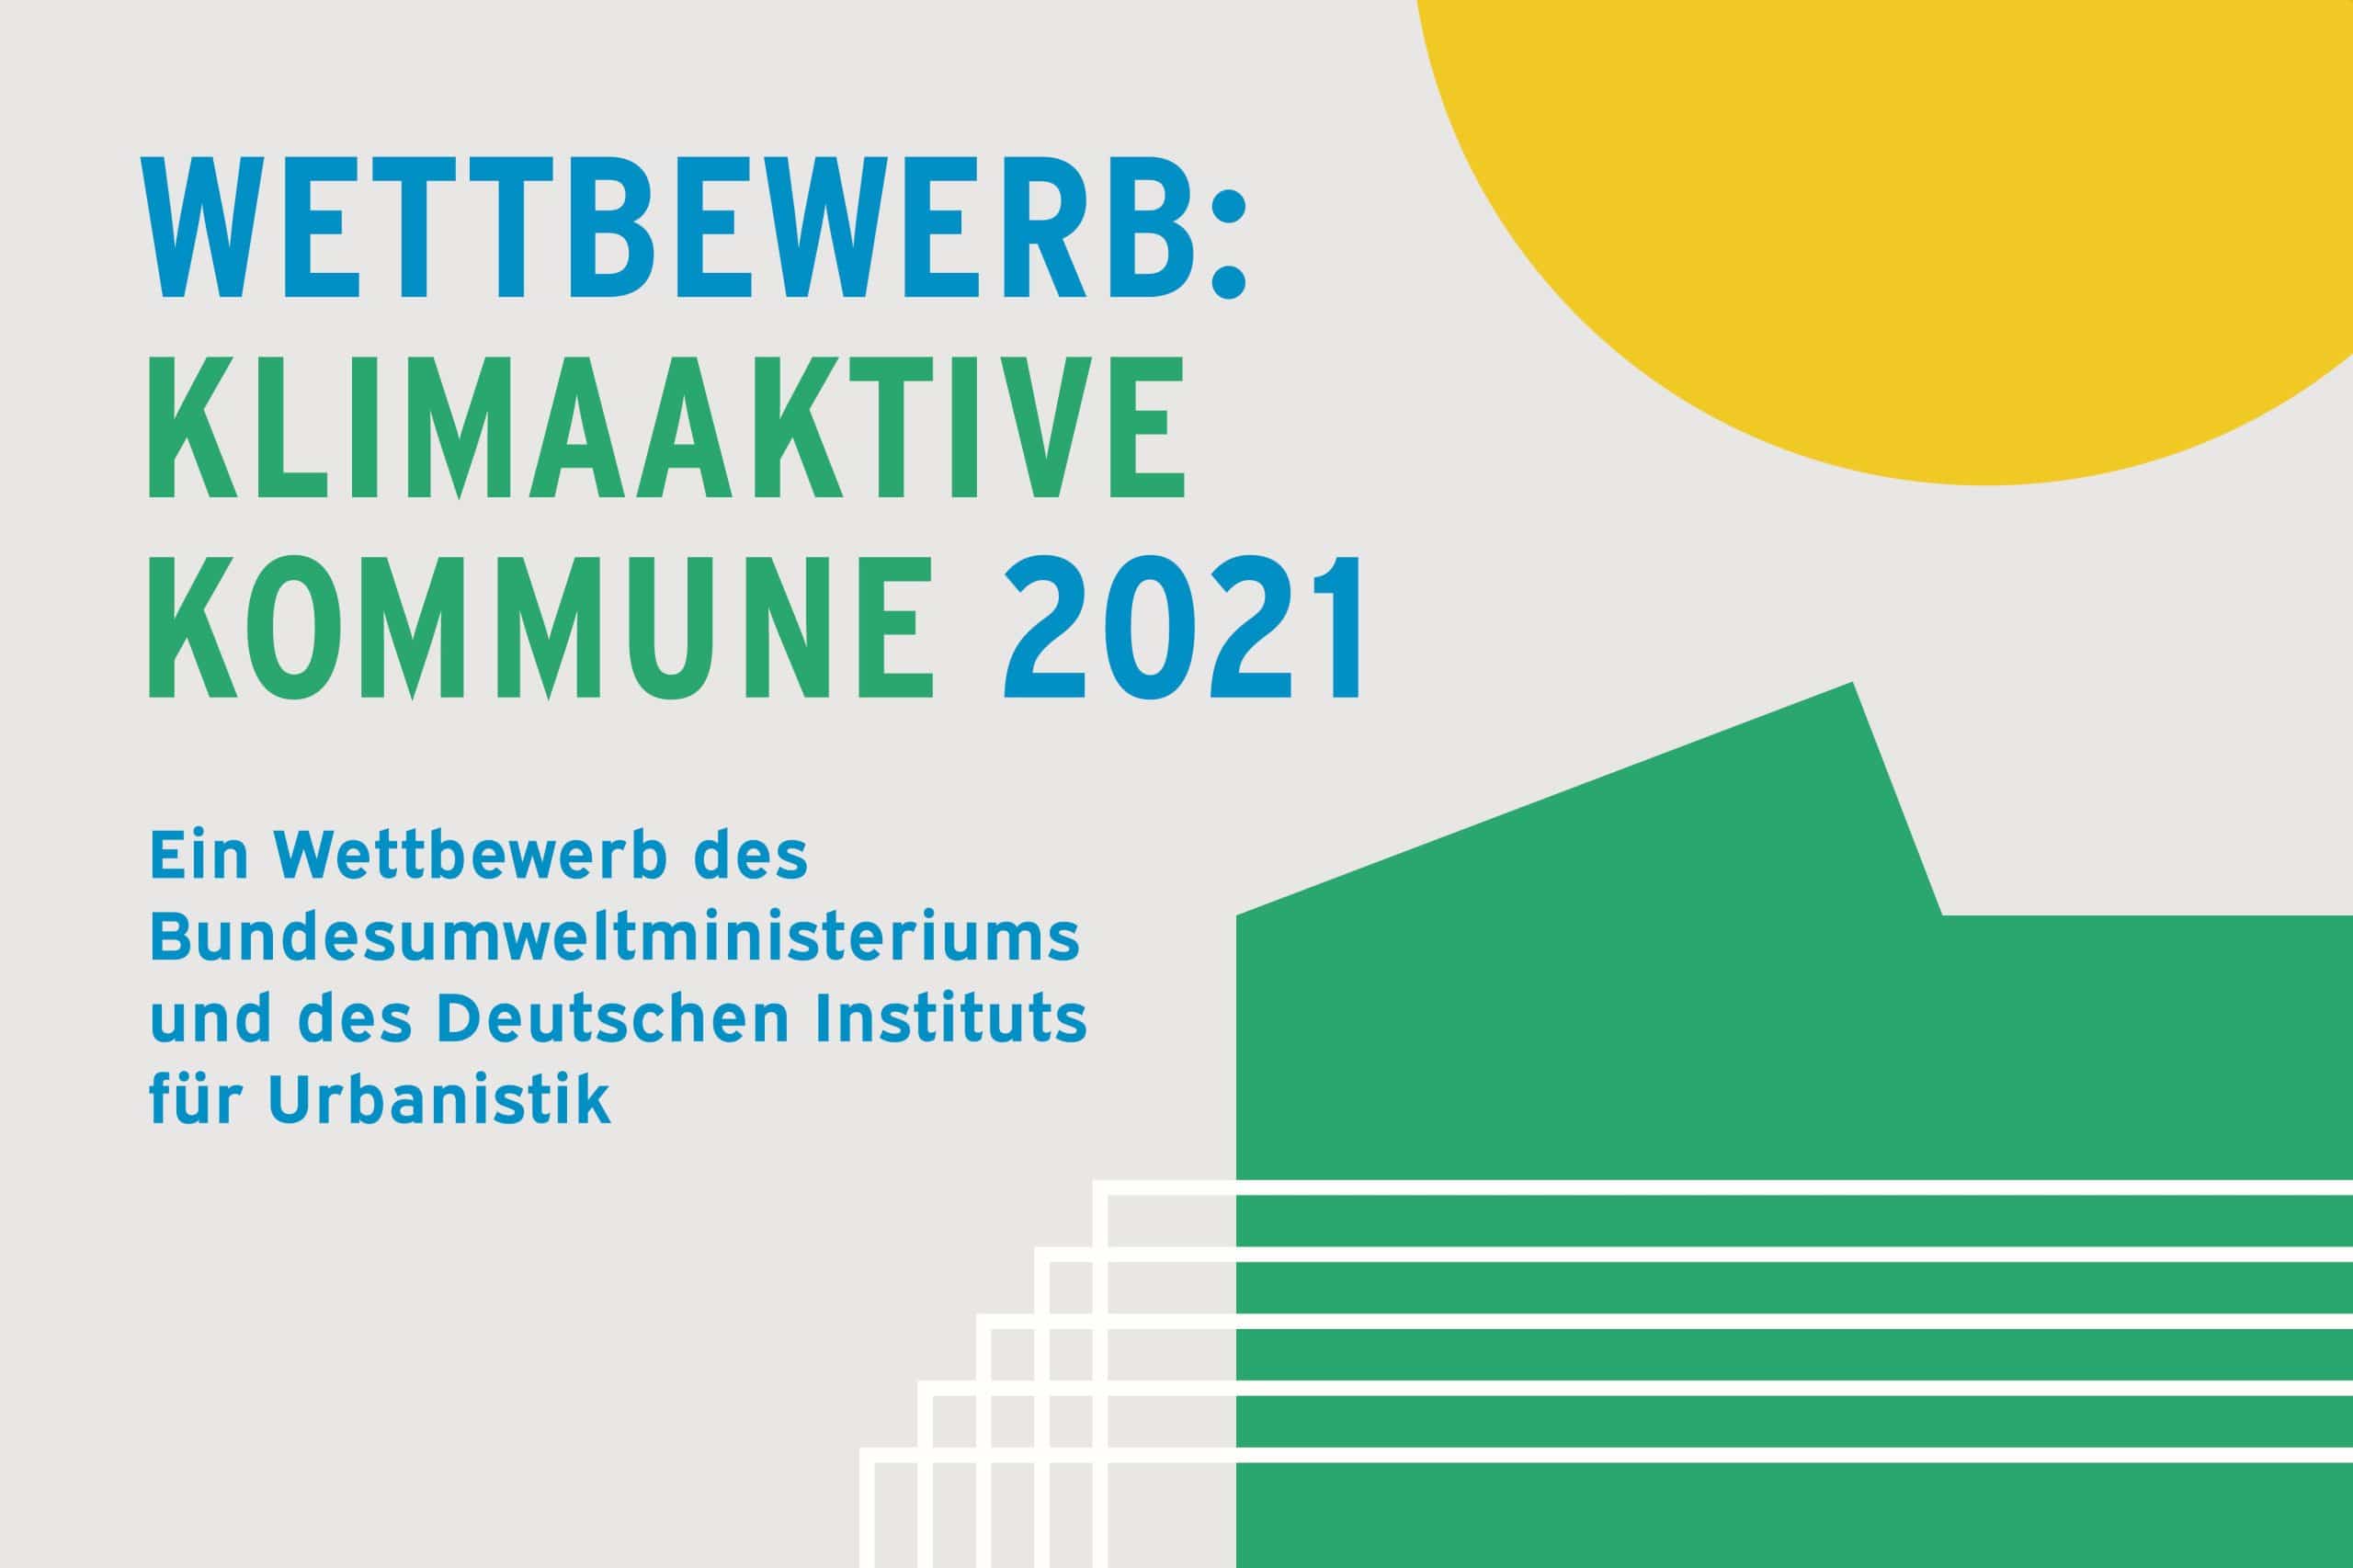 Wettbewerbsmotiv „Klimaaktive Kommune 2021“.